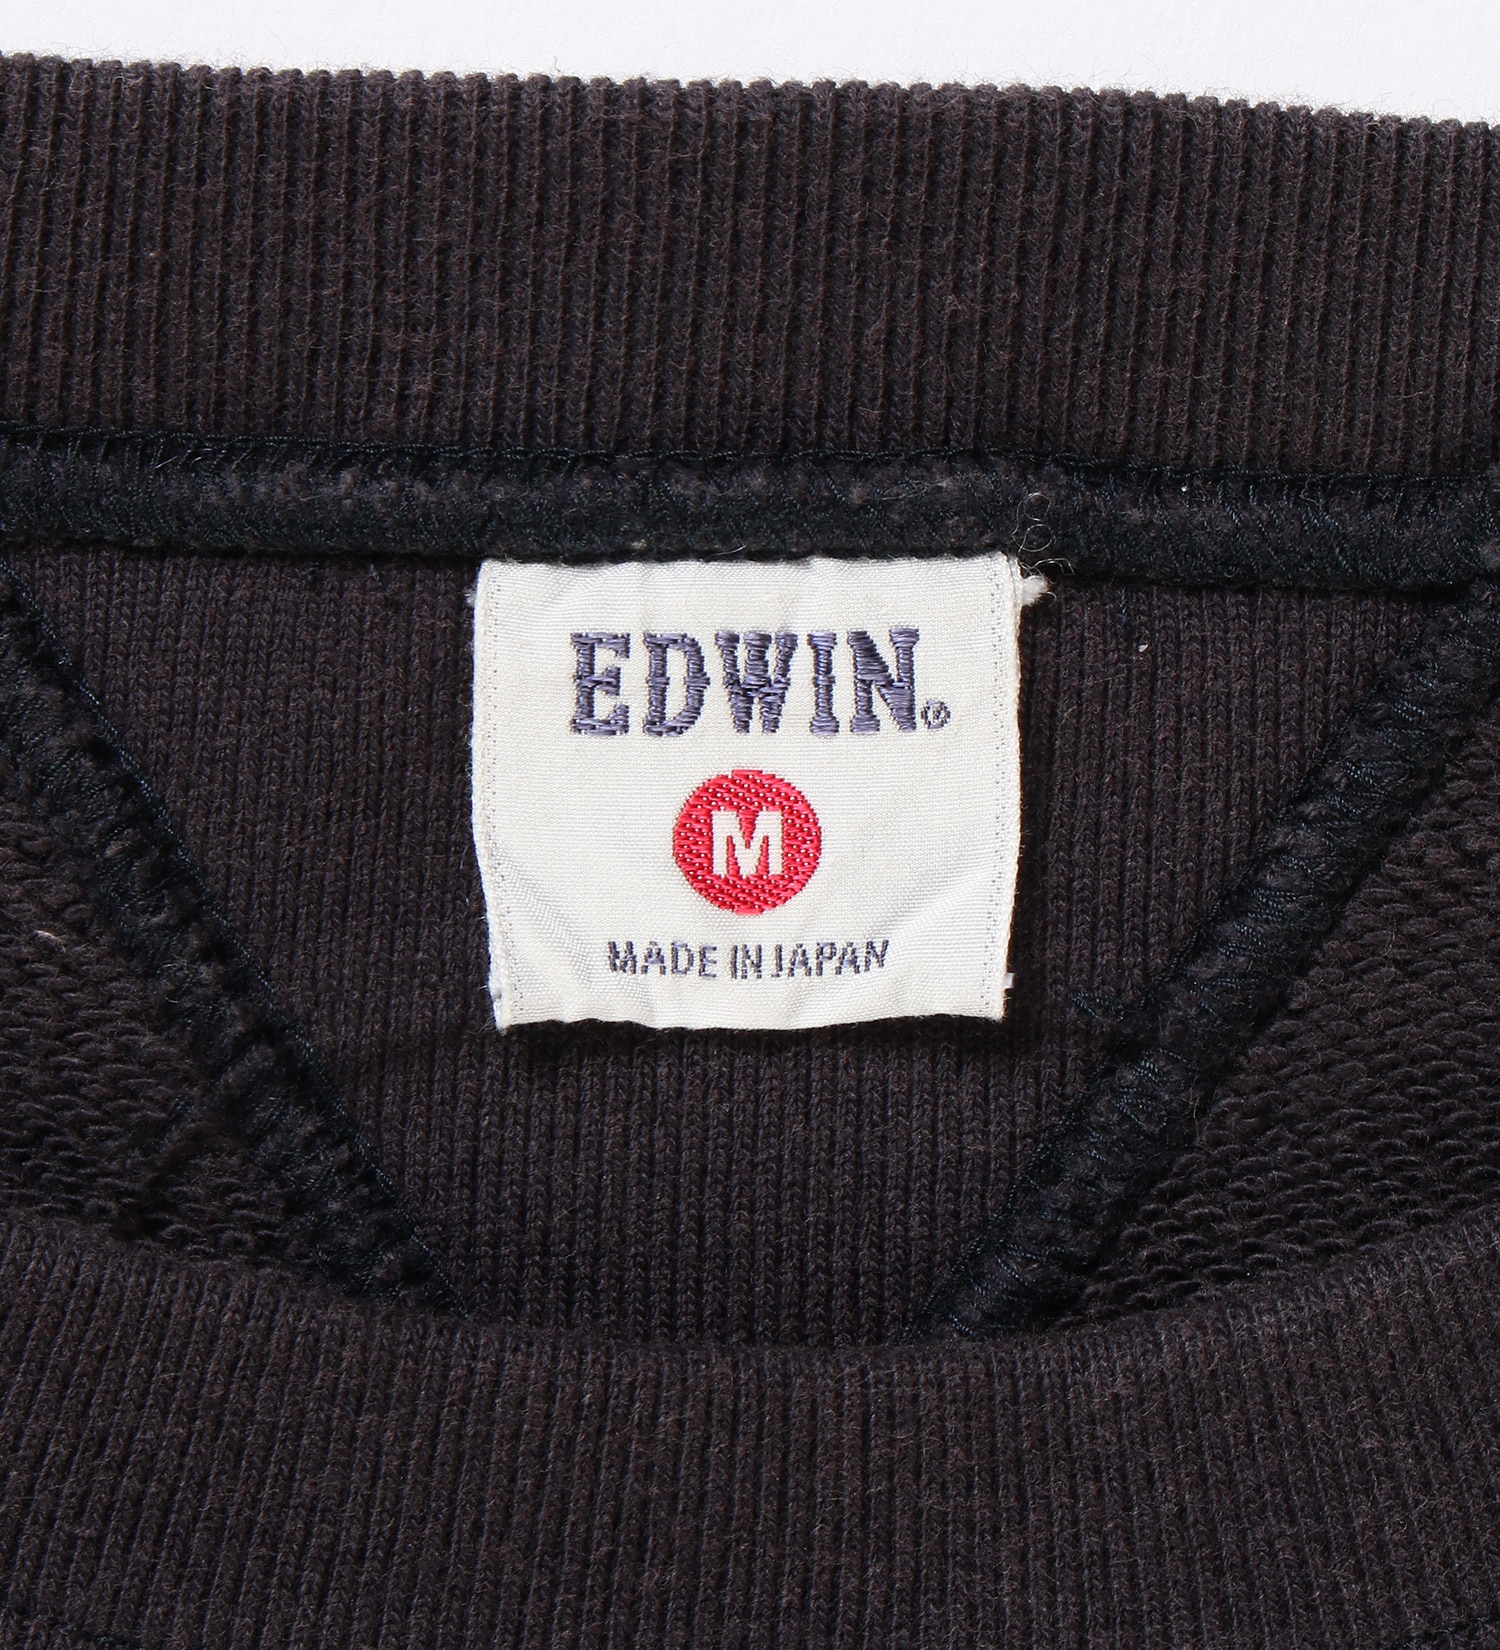 EDWIN(エドウイン)の【試着対象】【コンセプトショップ限定】CREW NECK SWEAT SHIRTS|トップス/スウェット/メンズ|ネイビー